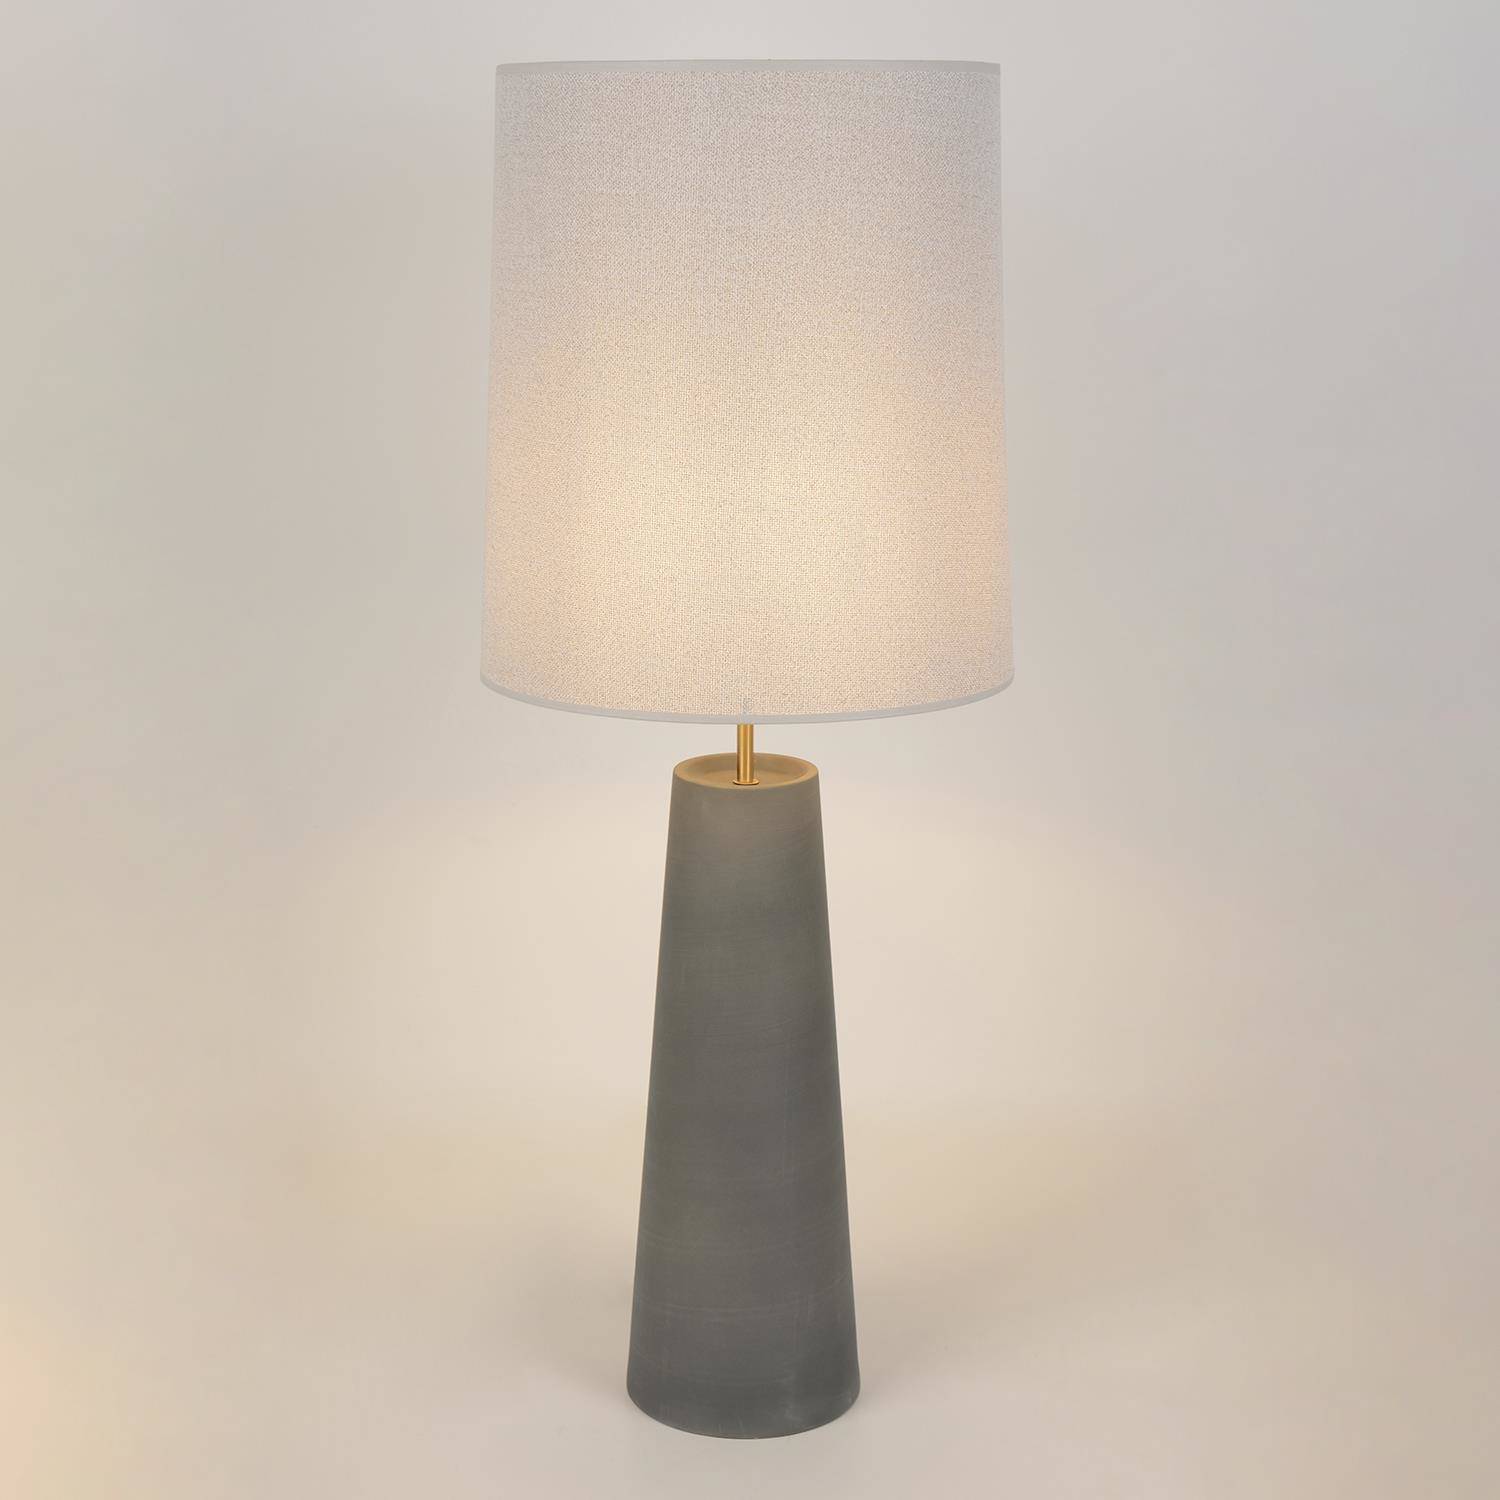 Market Set :: Lampa stołowa Cosiness szara wys. 101 cm